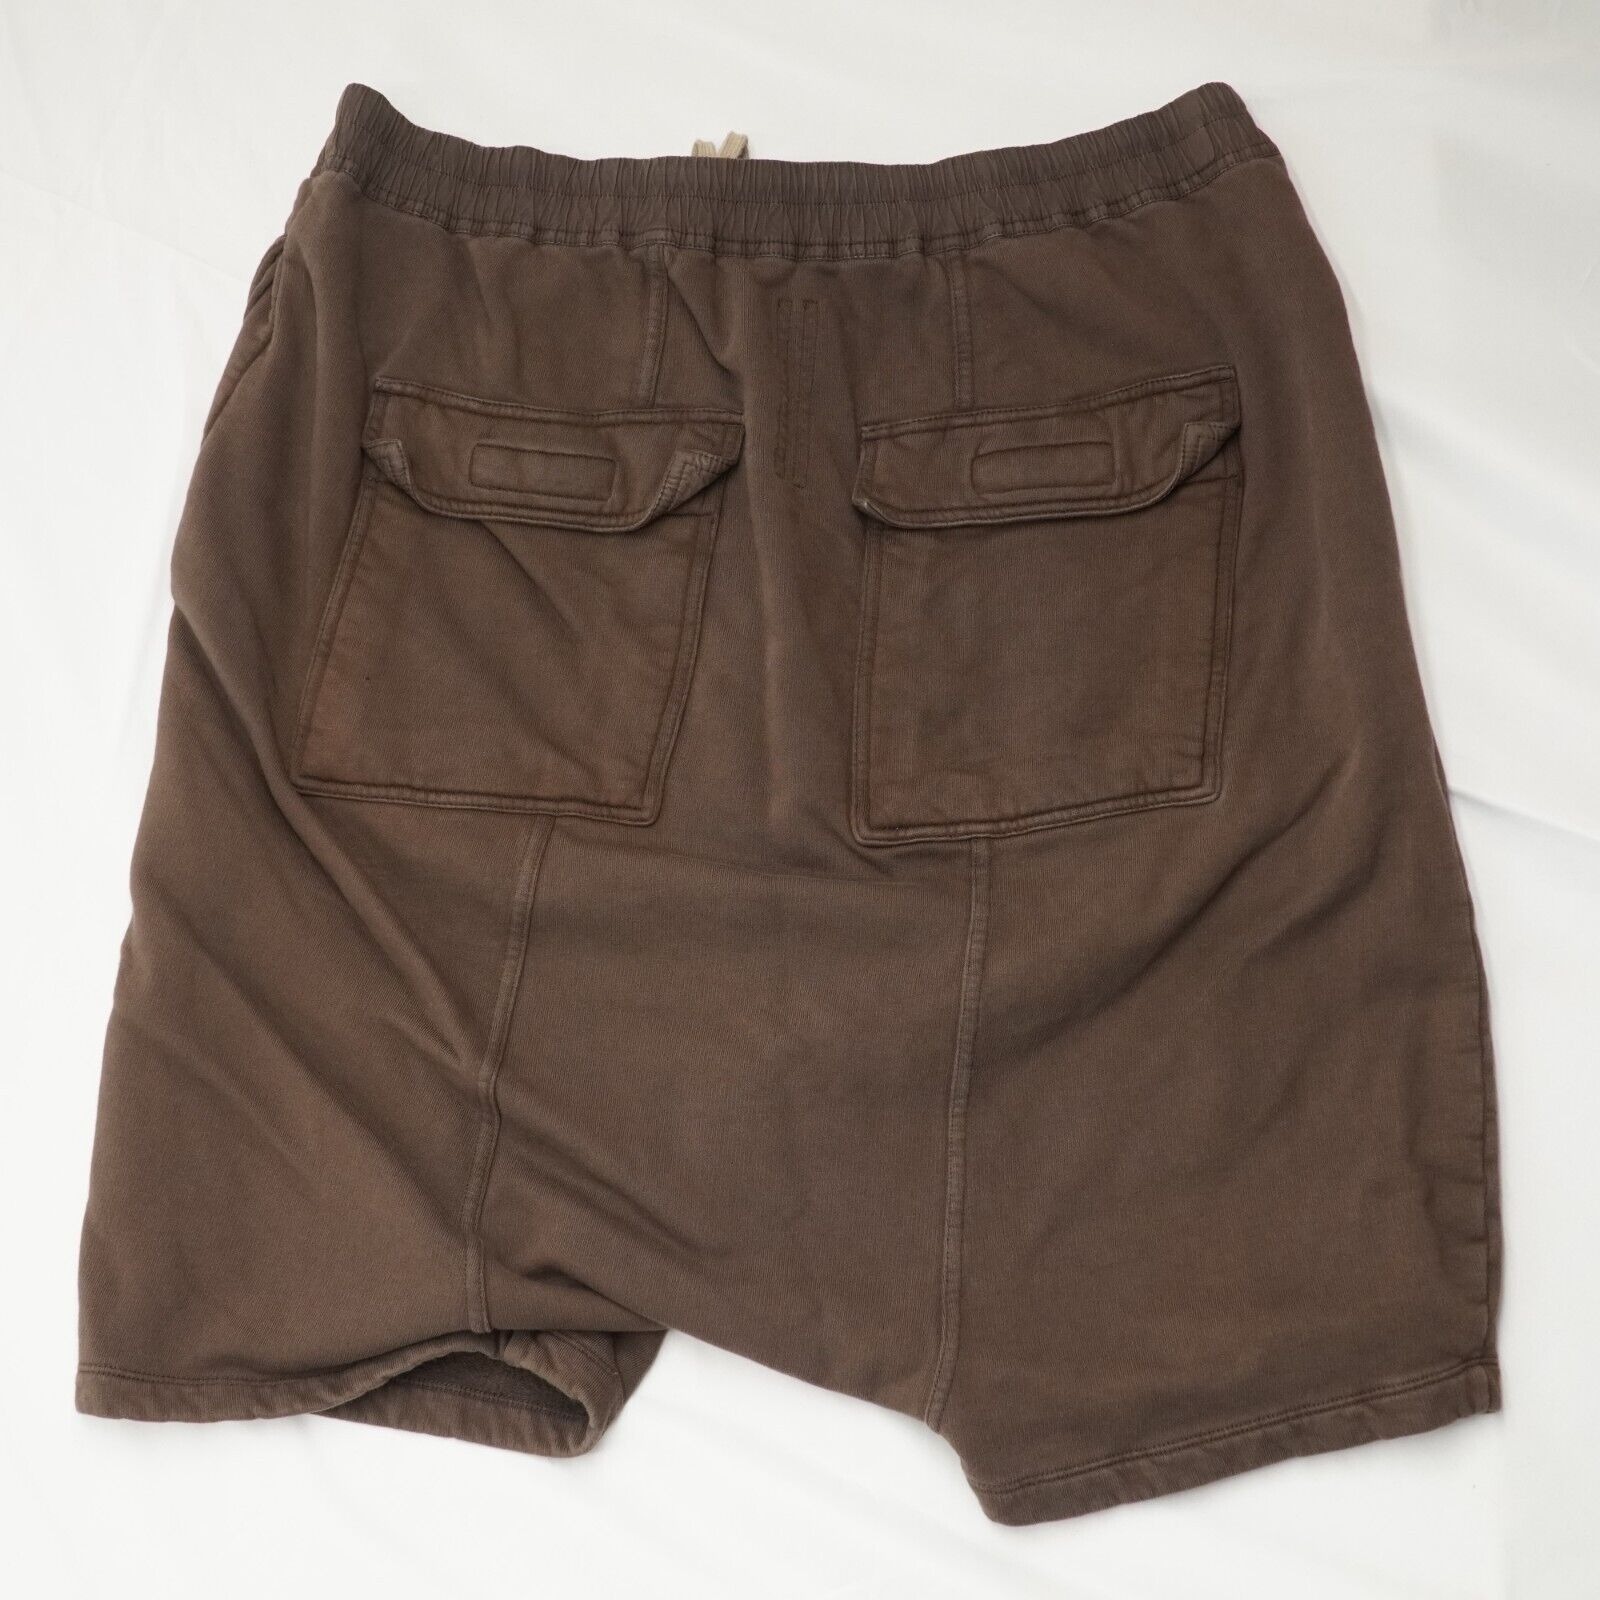 Rick Shorts Drop Crotch Cotton Macassar Brown Large - 14